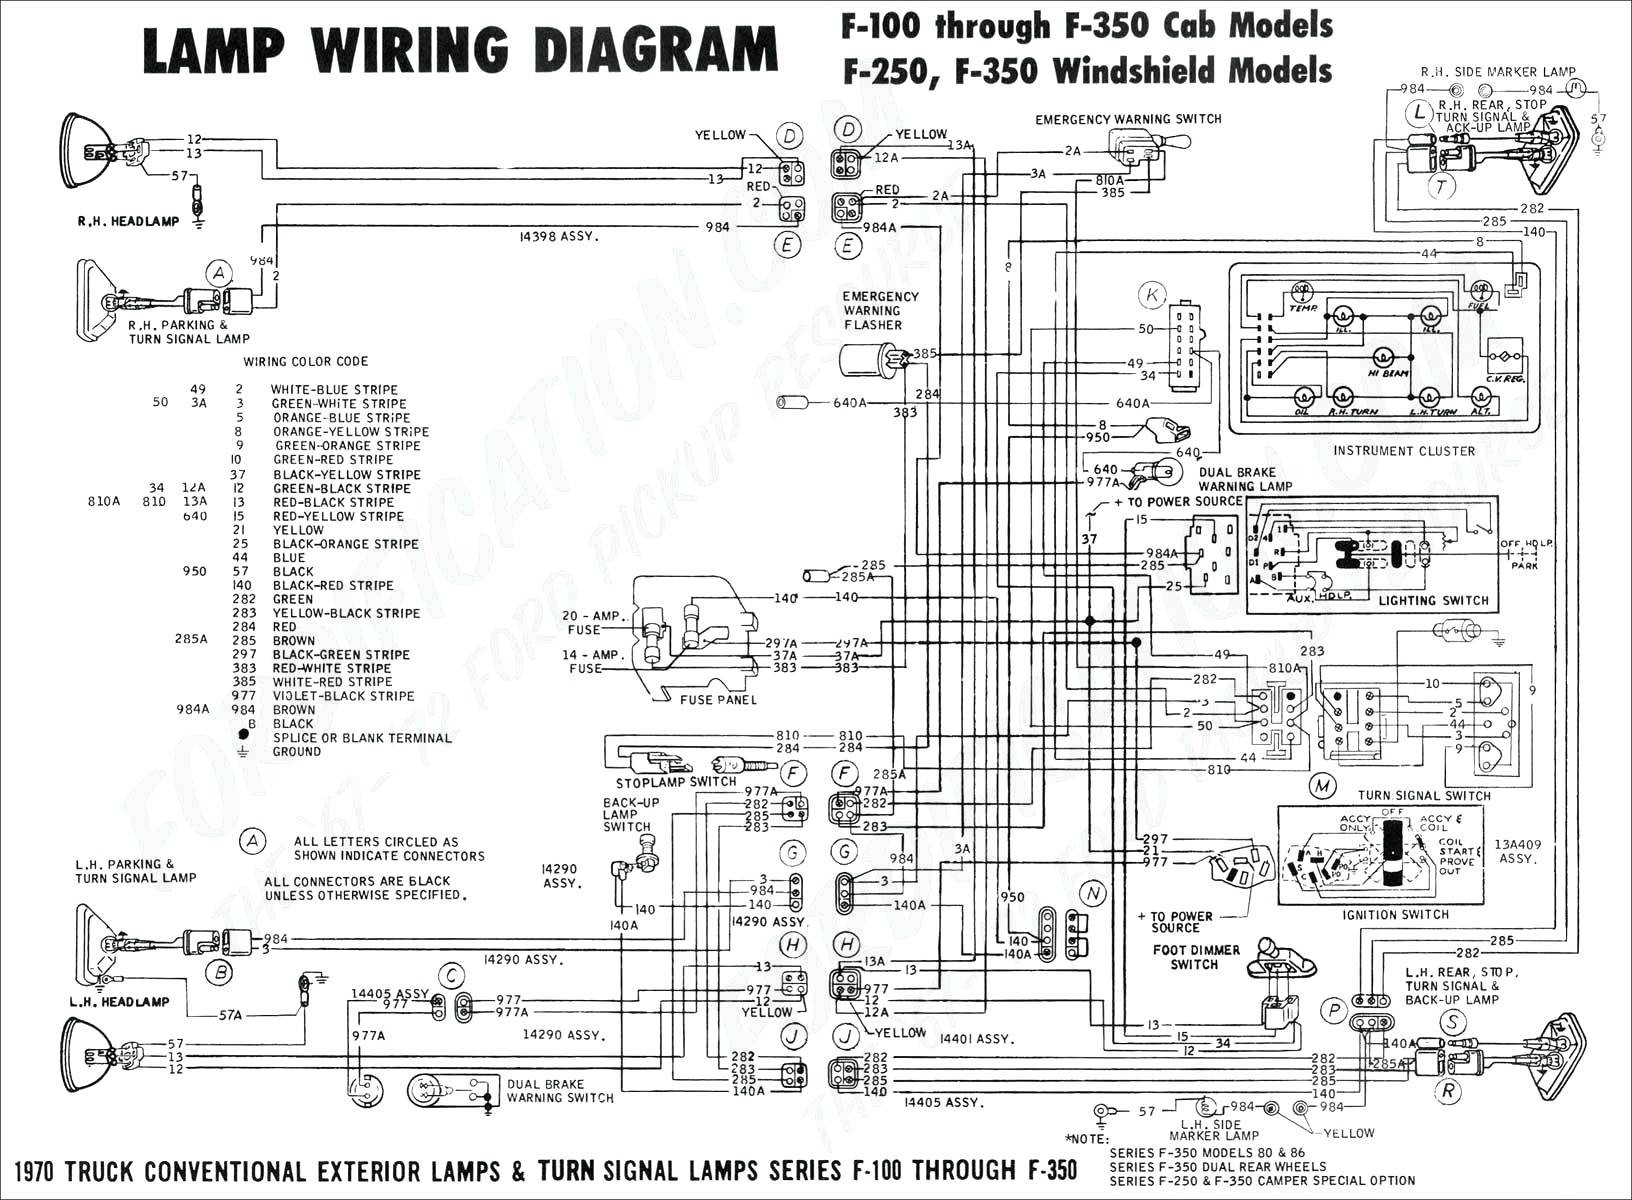 Trailer Wiring Diagram 7 Pin Wiring Diagram for 7 Pin Trailer Light Plug New Wiring Trailer Of Trailer Wiring Diagram 7 Pin